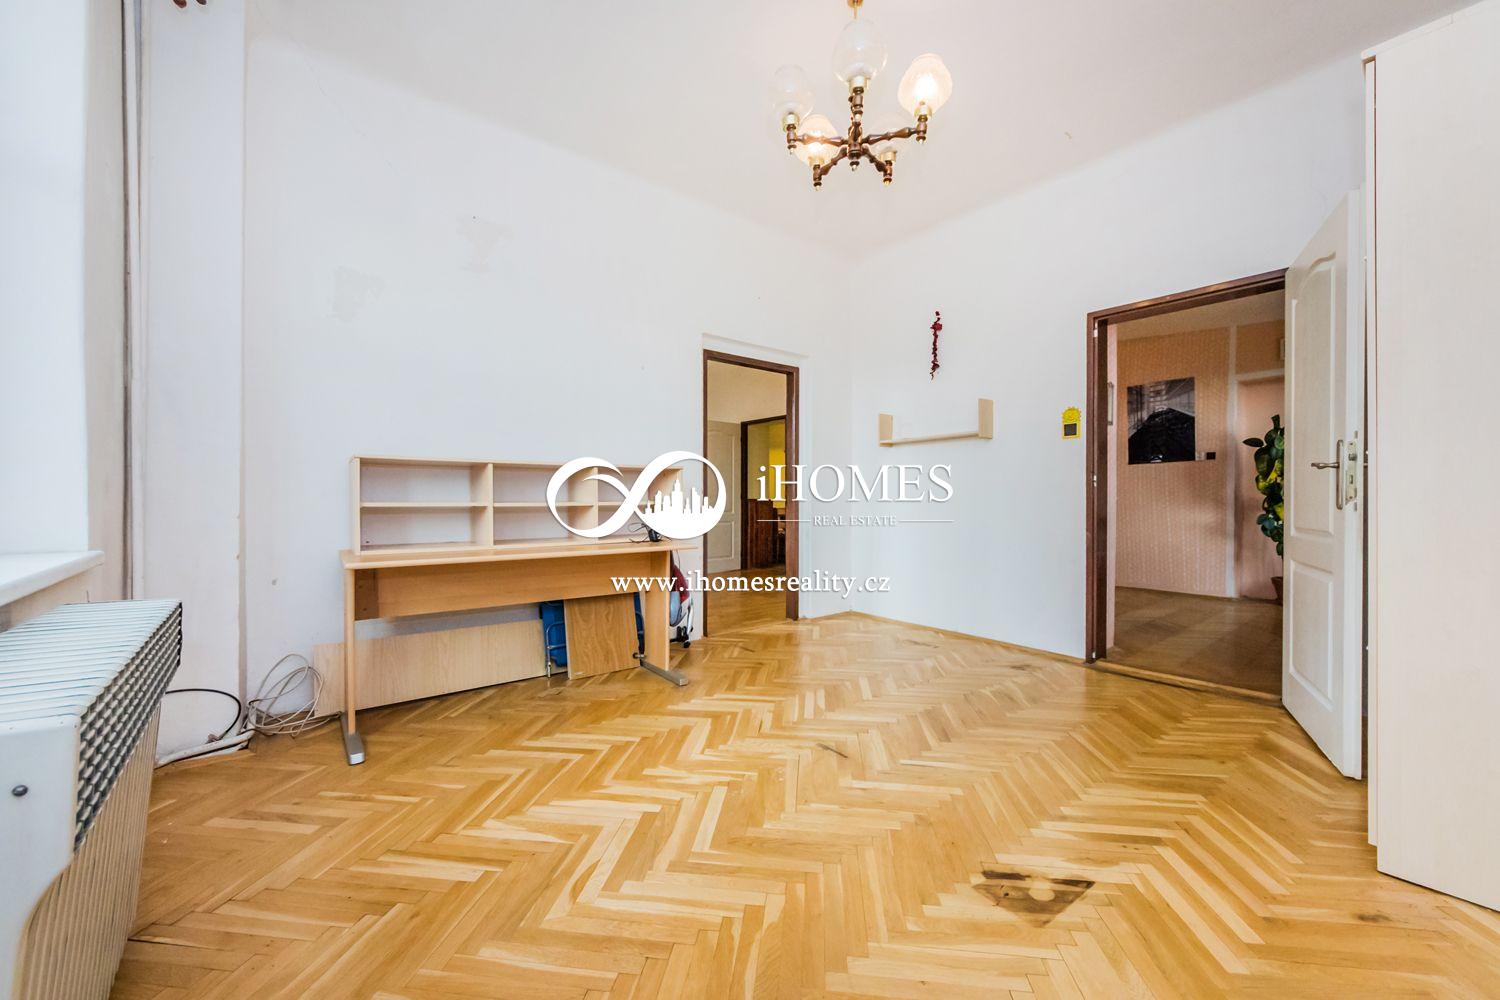 Na prodej ČD 19 bytu a kancelař 1200m2 bytové plochy pozemek 600 m2 Praha 7 Holešovice., obrázek č. 1